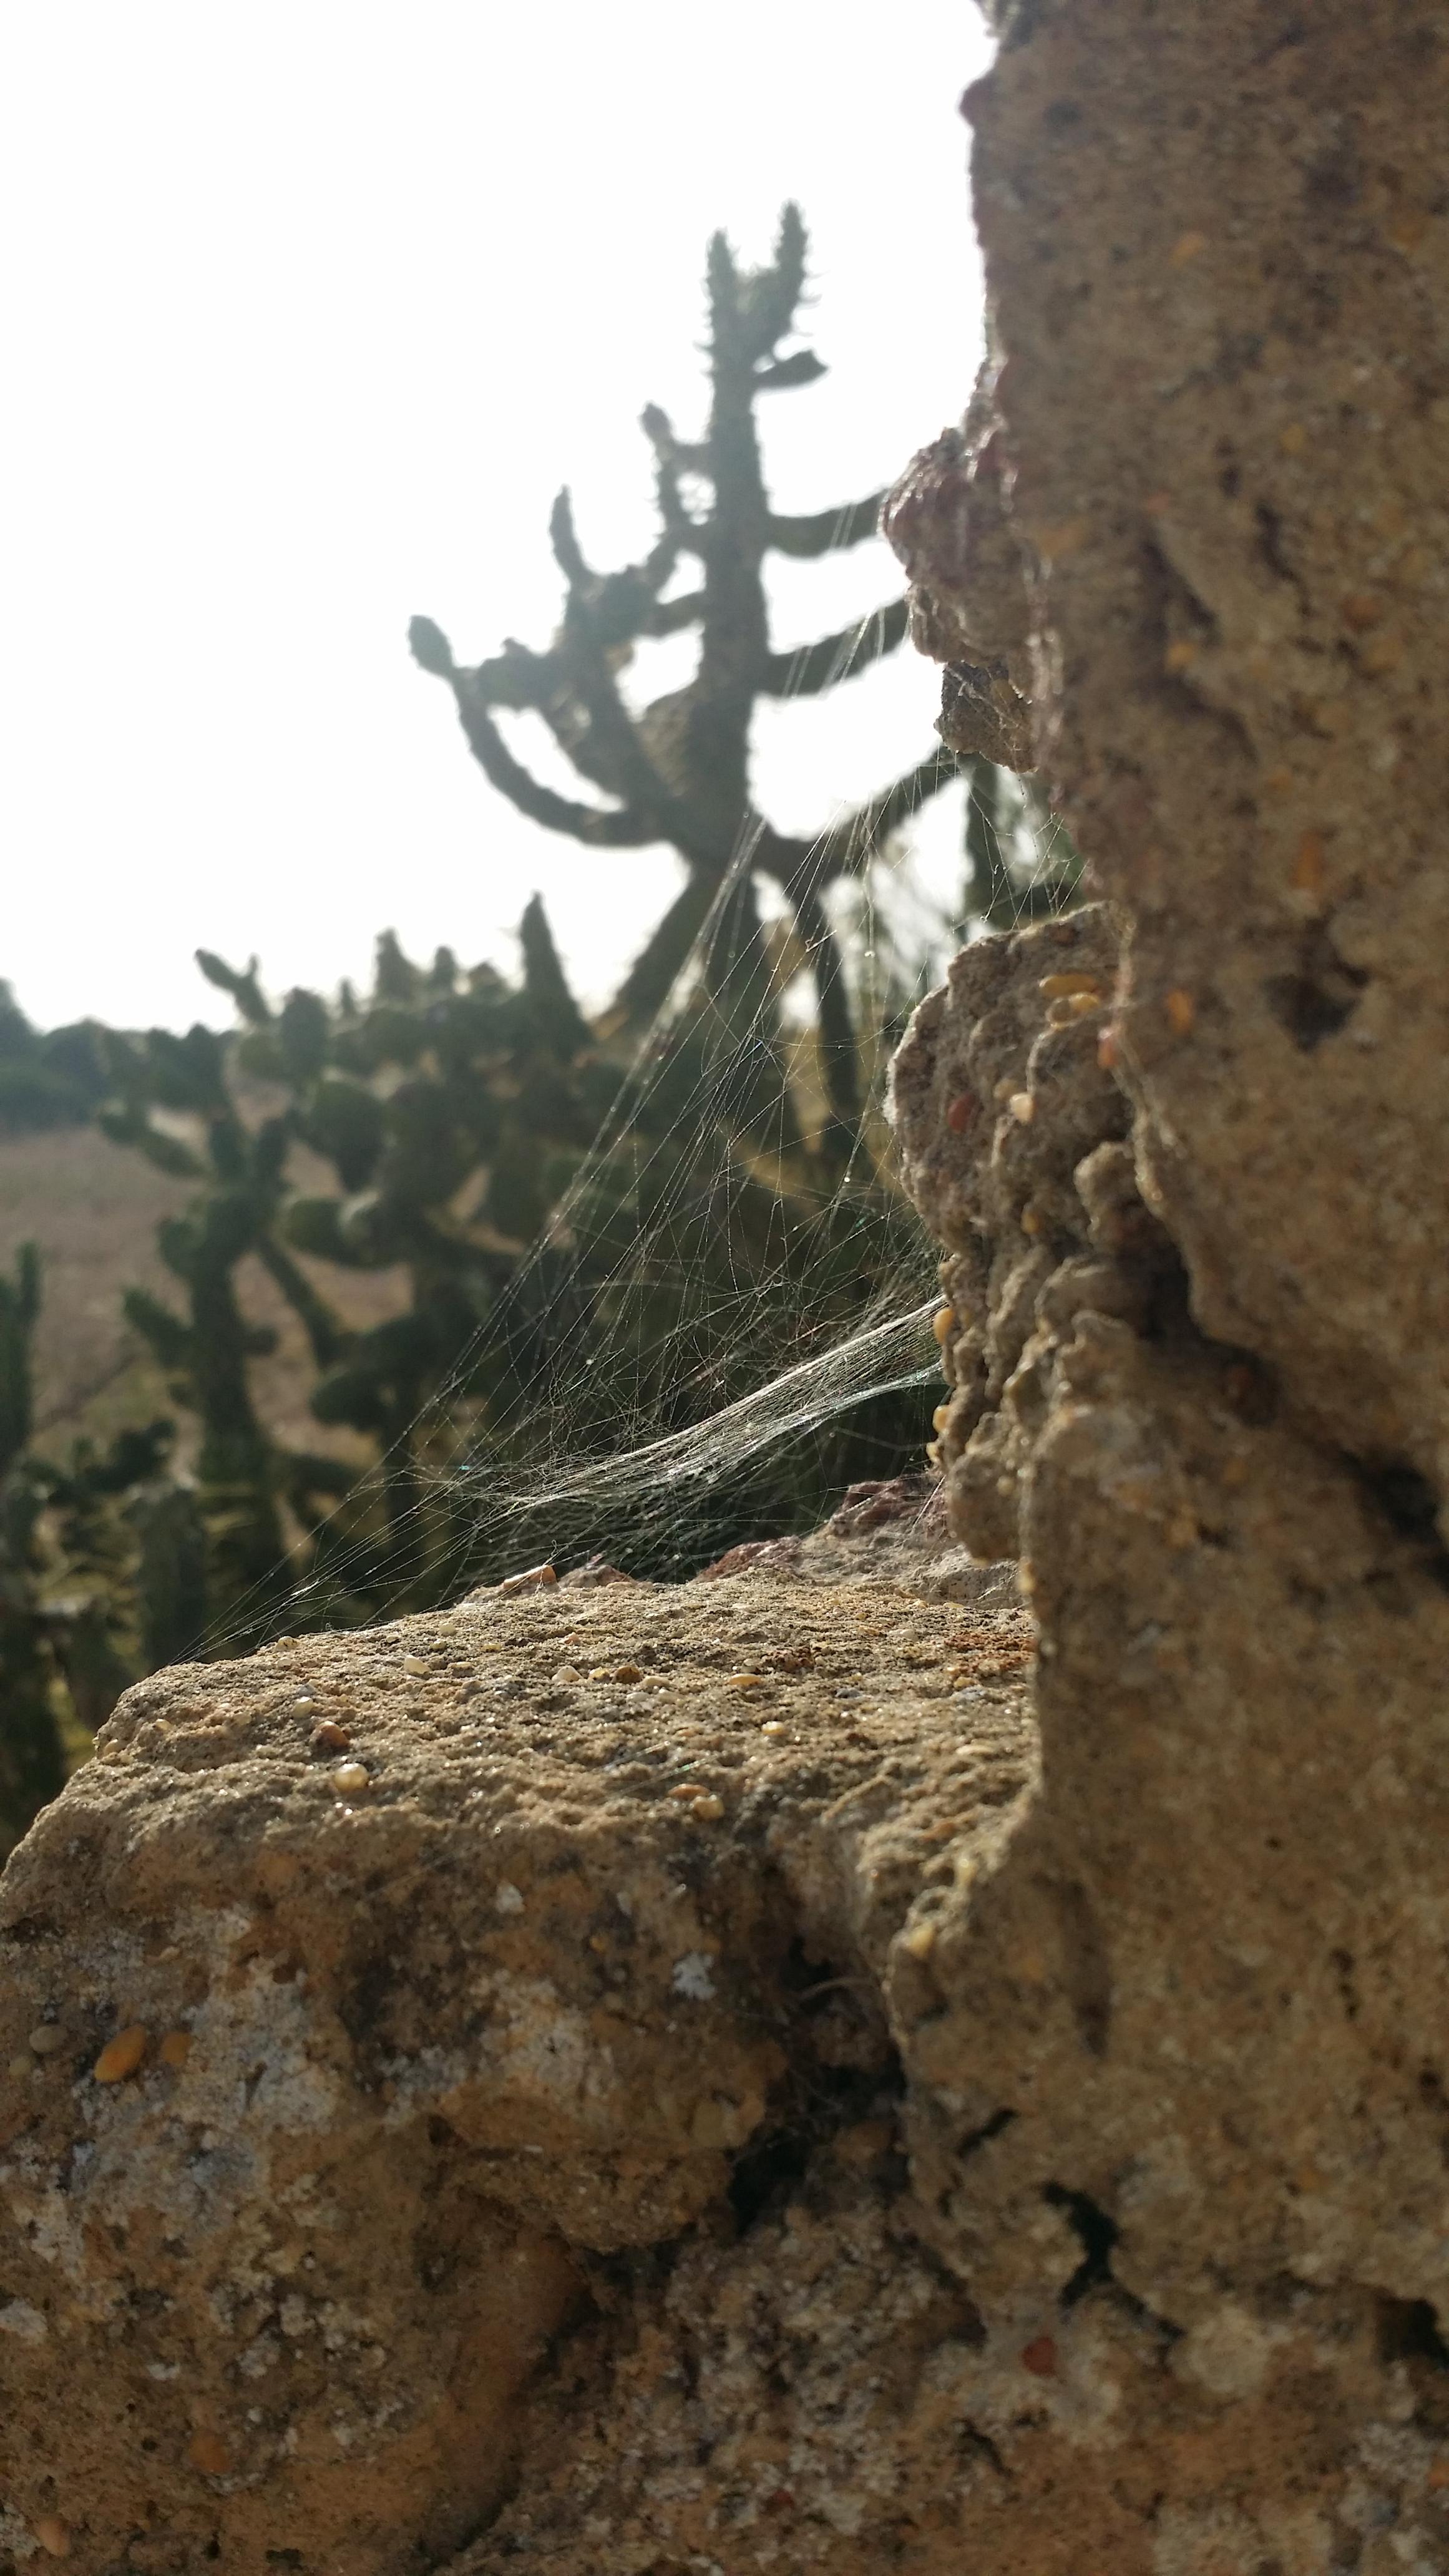 #abinsgruene #spinnennetz #kaktus #travel #weltreise #portugal #sagres 